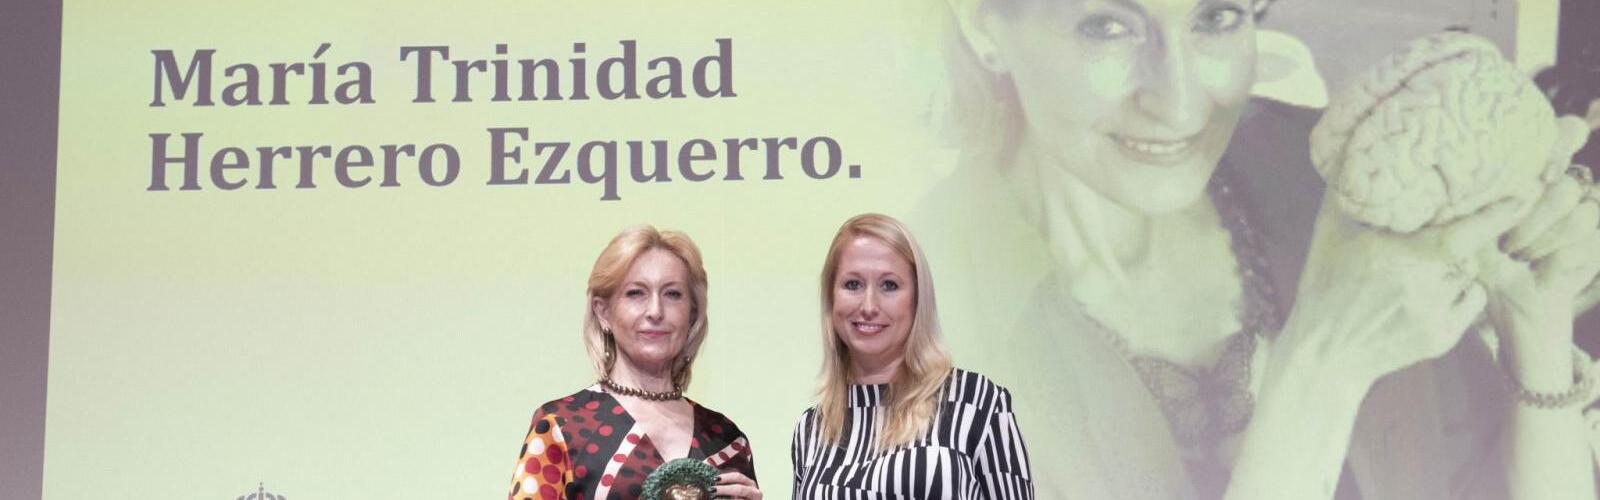 La profesora María Trinidad Herrero, distinguida con uno de los 'Premios Mayores de la Región de Murcia'